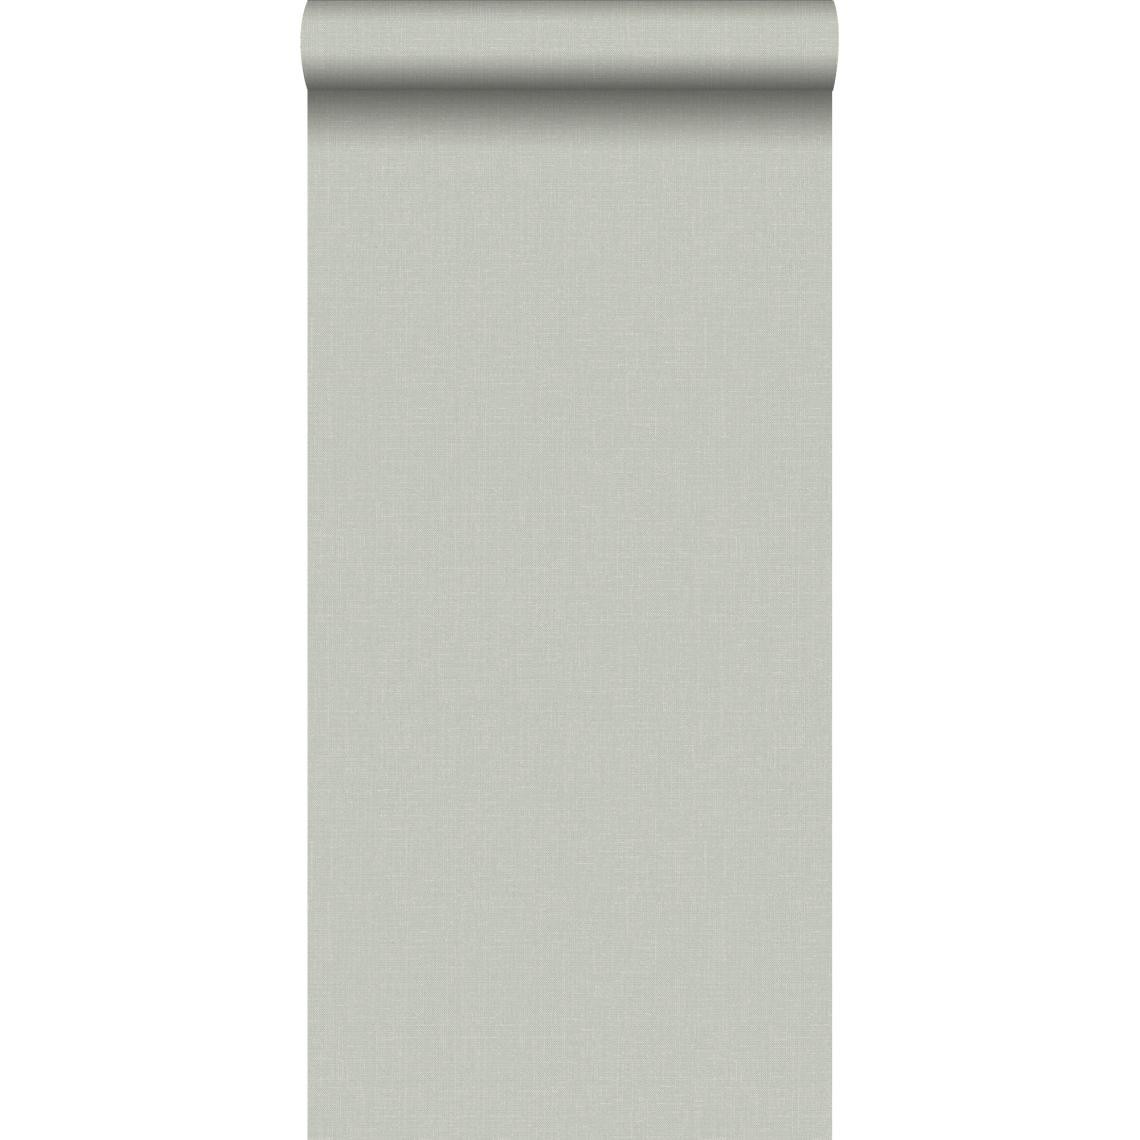 ESTAhome - ESTAhome papier peint effet lin gris clair - 148741 - 0.53 x 10.05 m - Papier peint